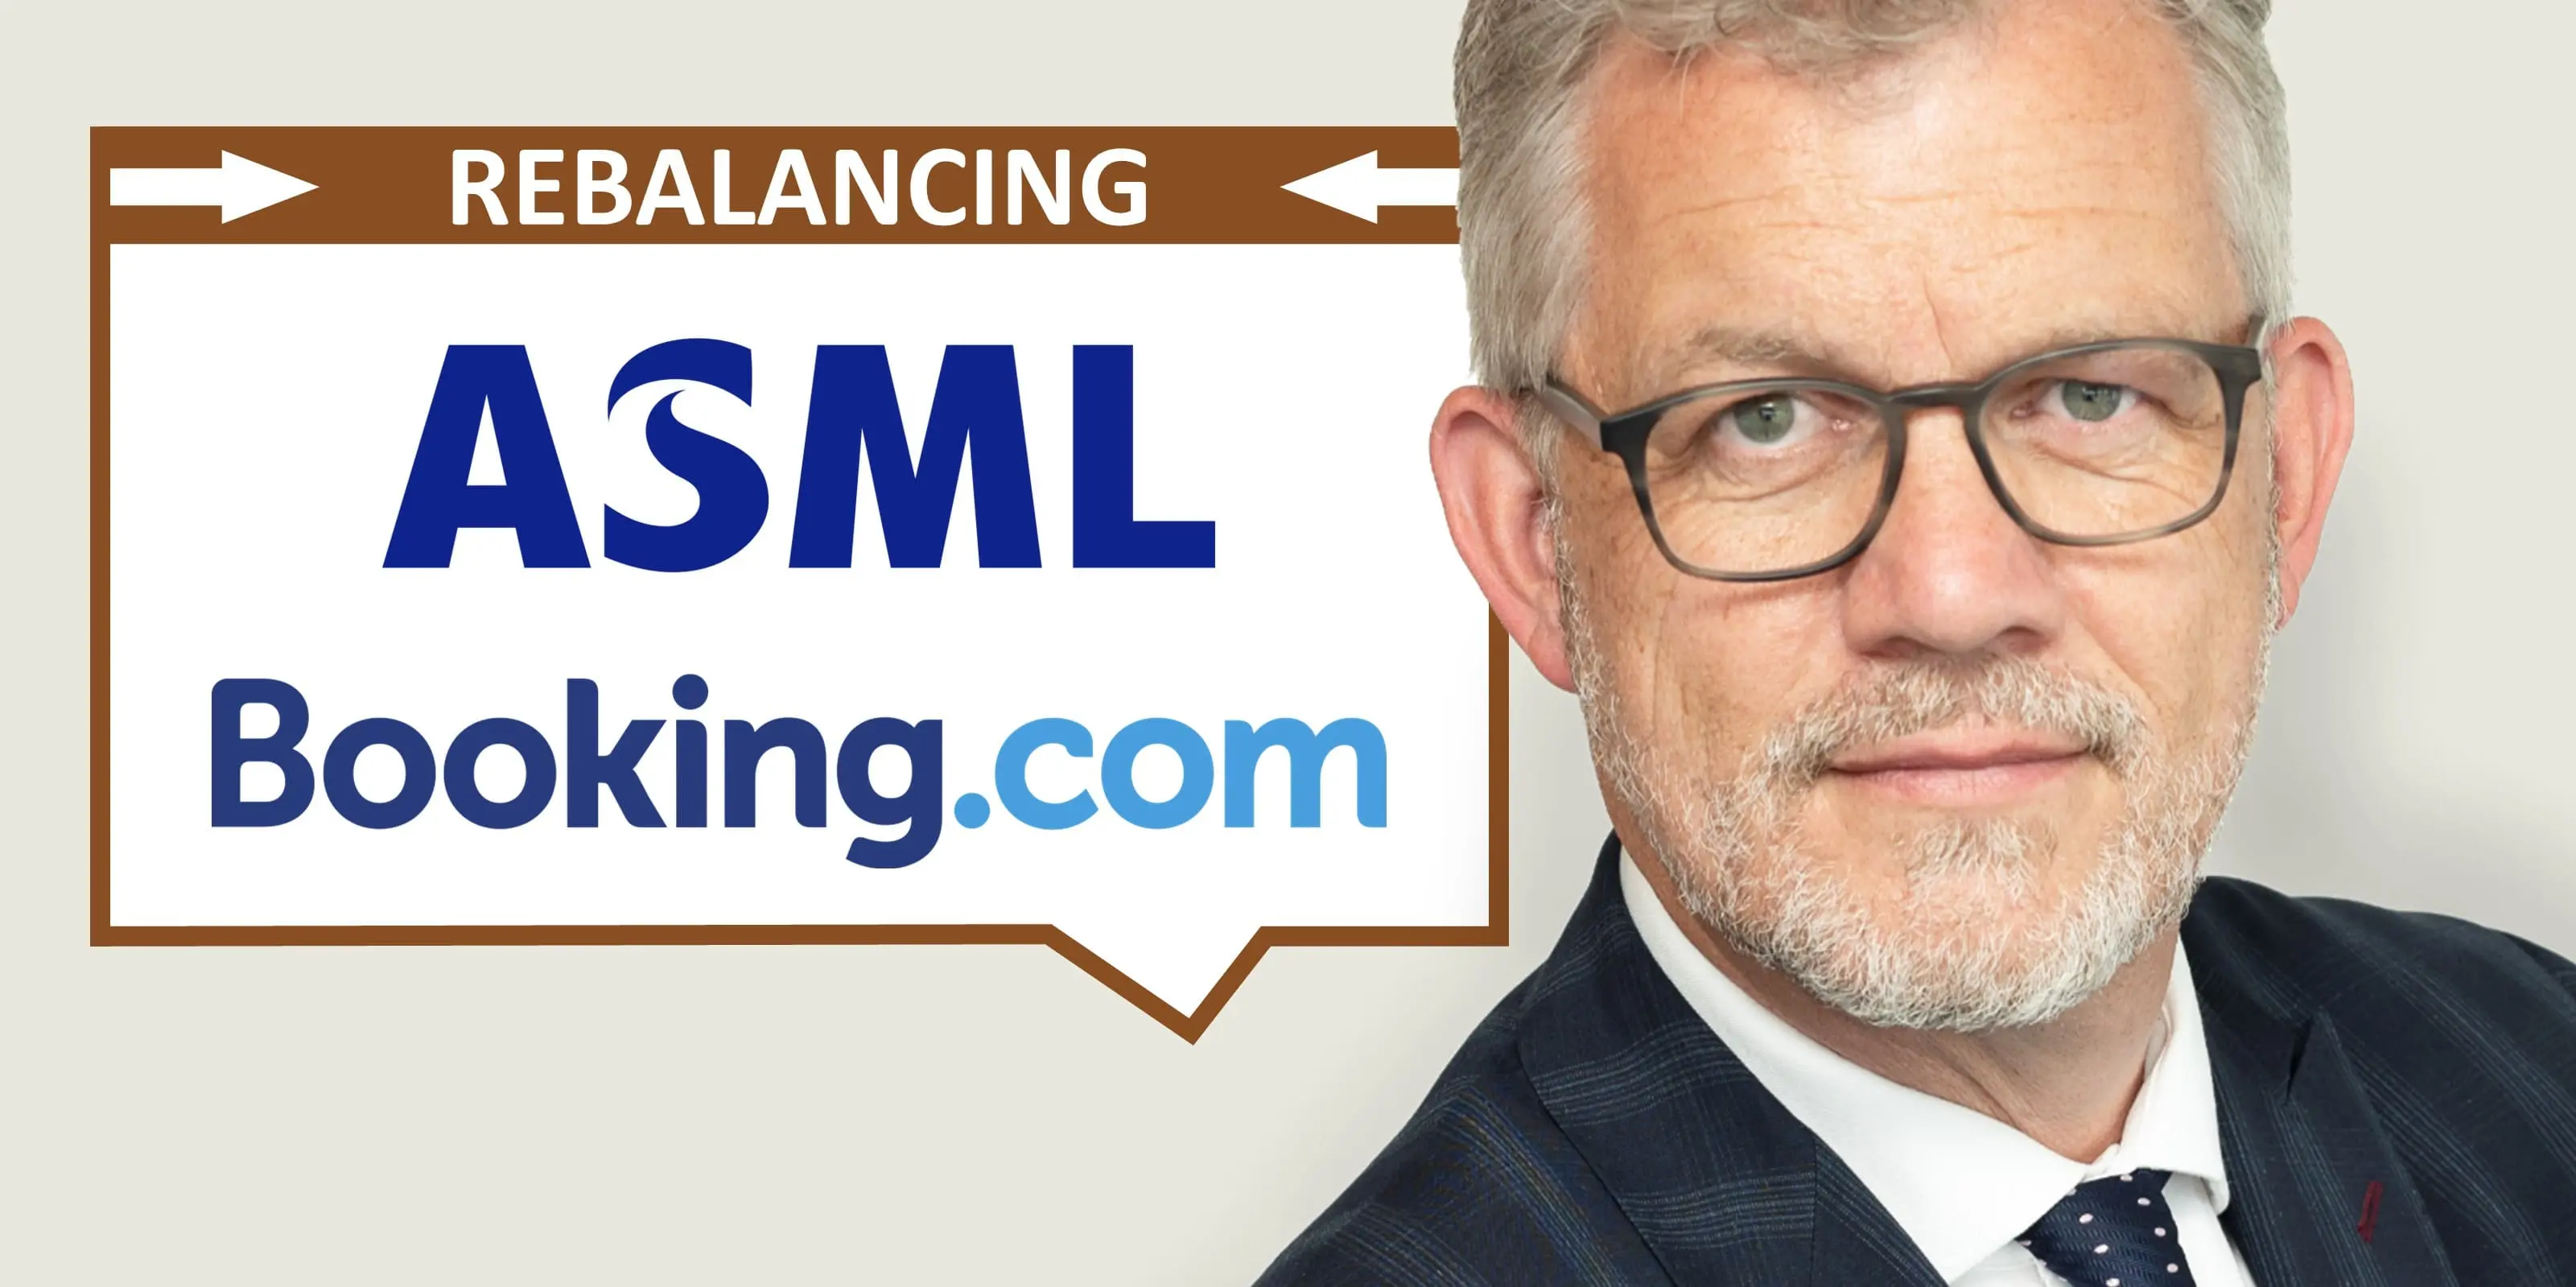 ASML und Booking nach Rebalancing im Index